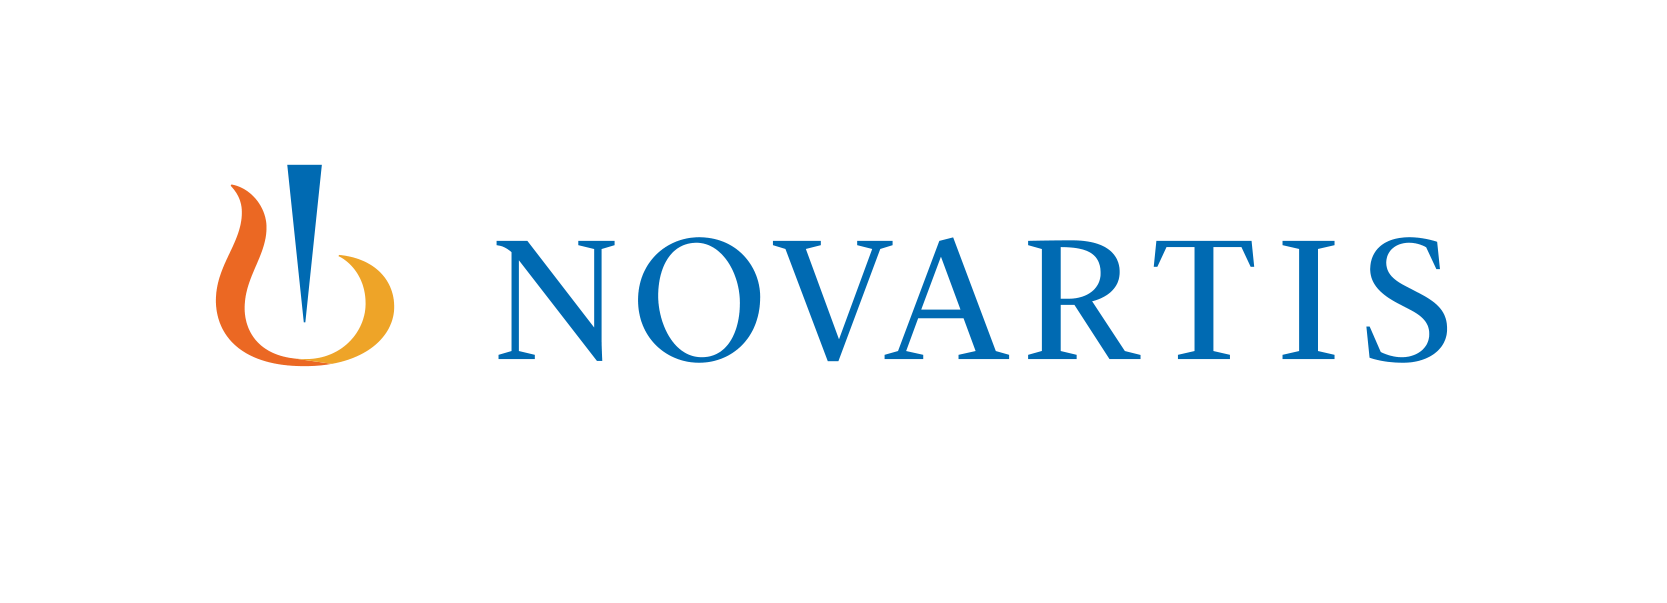 Novartis Corporation